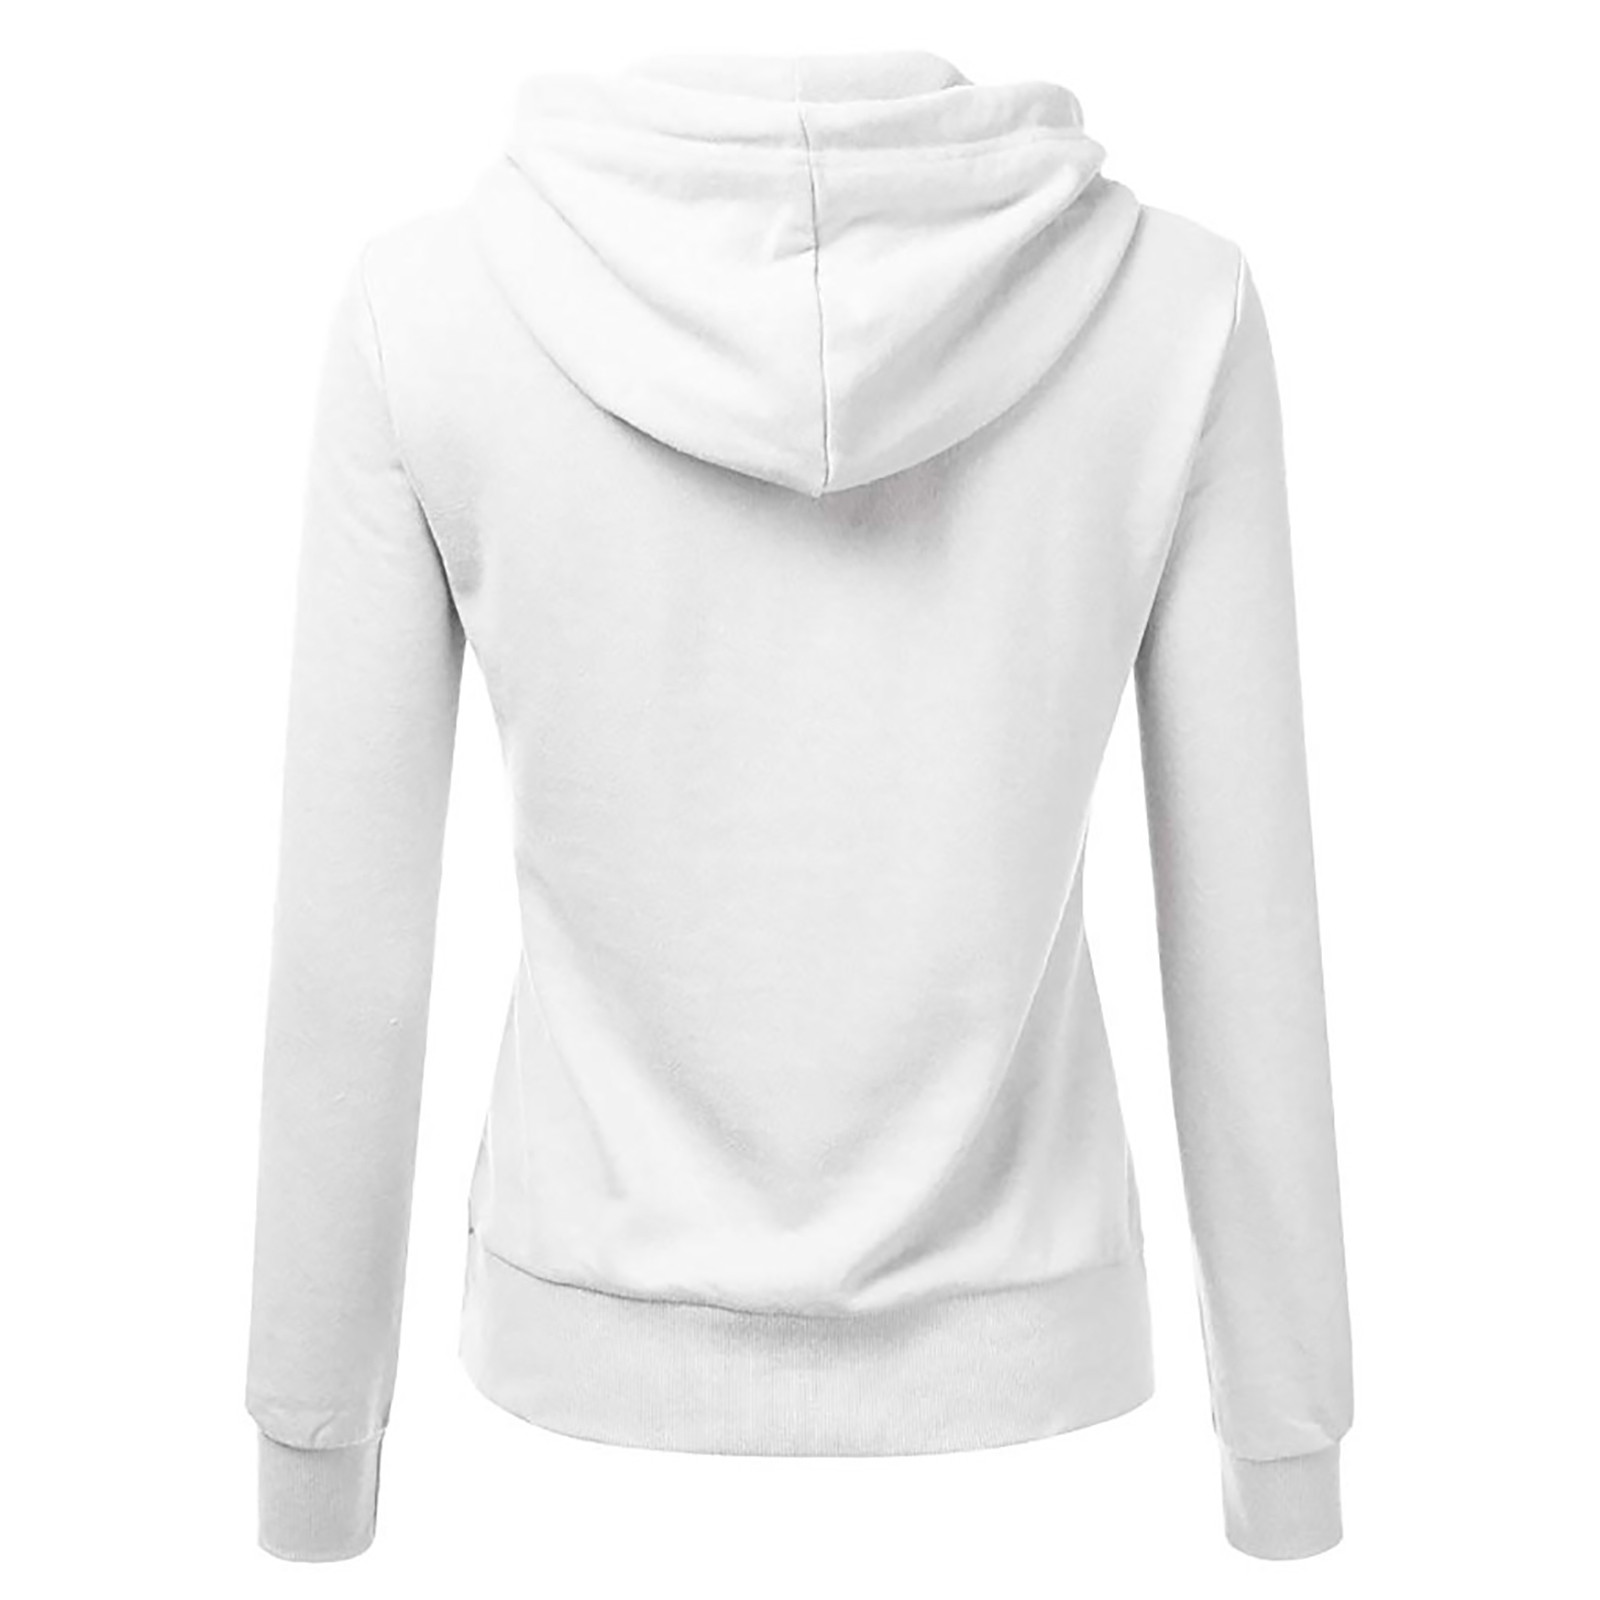 symoid Womens Sweatshirts & Hoodies- Long Sleeve Solid Hoodies ...